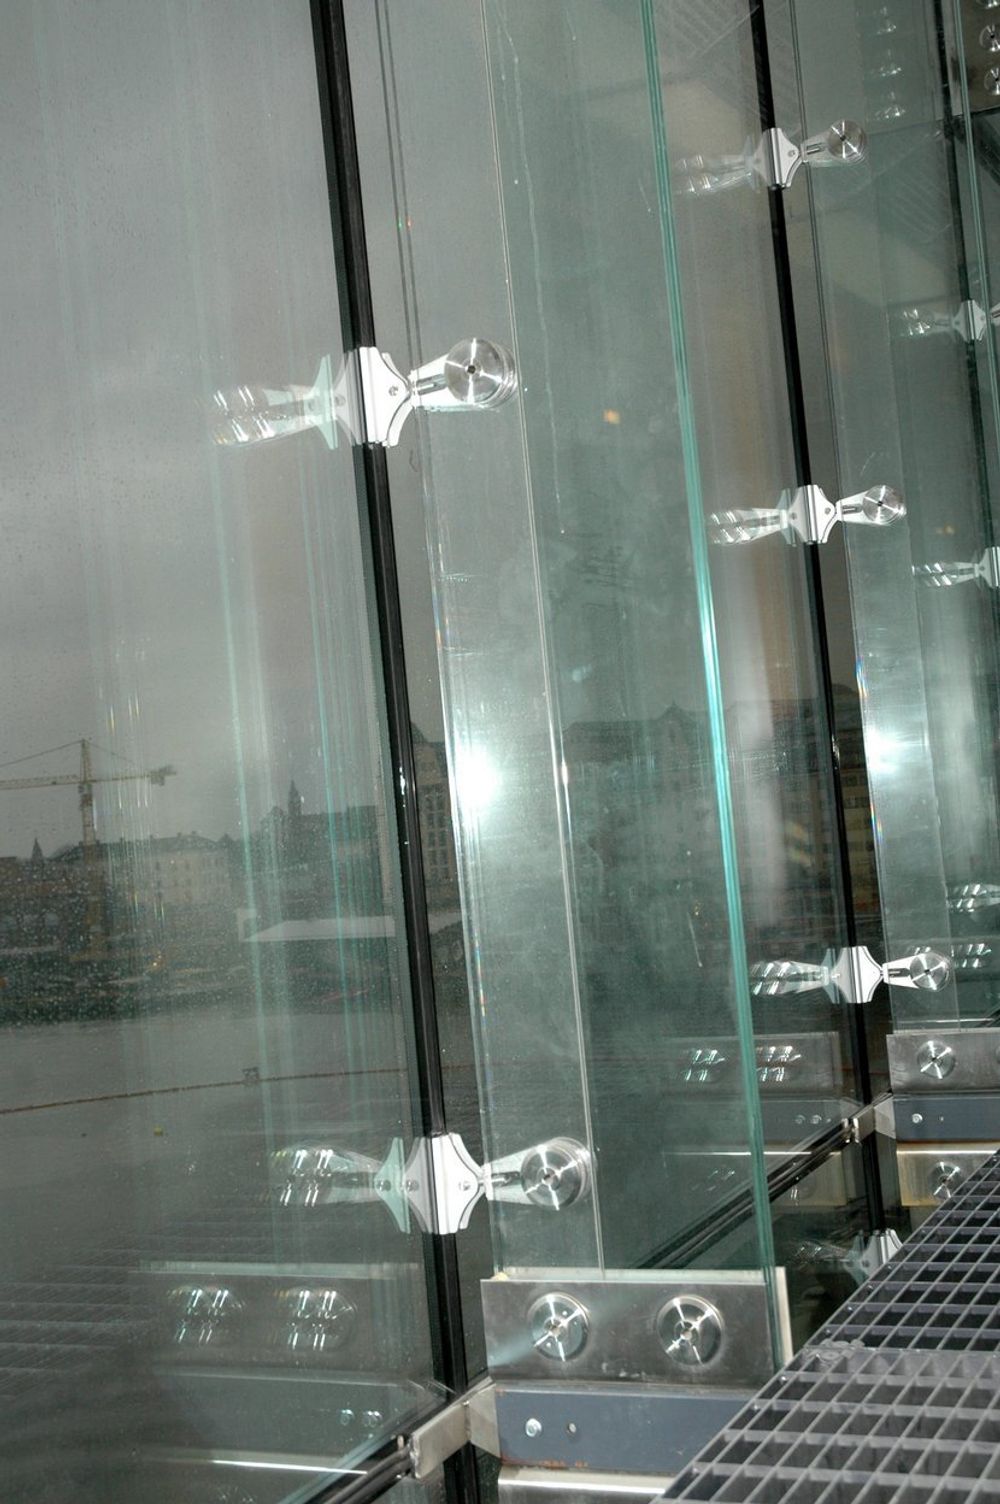 STRUCTURAL GLAZING betyr at ikke bare fasaden er av glass, men også at de bærende bjelkene på innsiden er laget av glass. Deres primære oppgave er å overføre vindlastene til  innfestningspunkter i topp og bunn. 1500 kvadratmeter fasade er laget på denne måten.